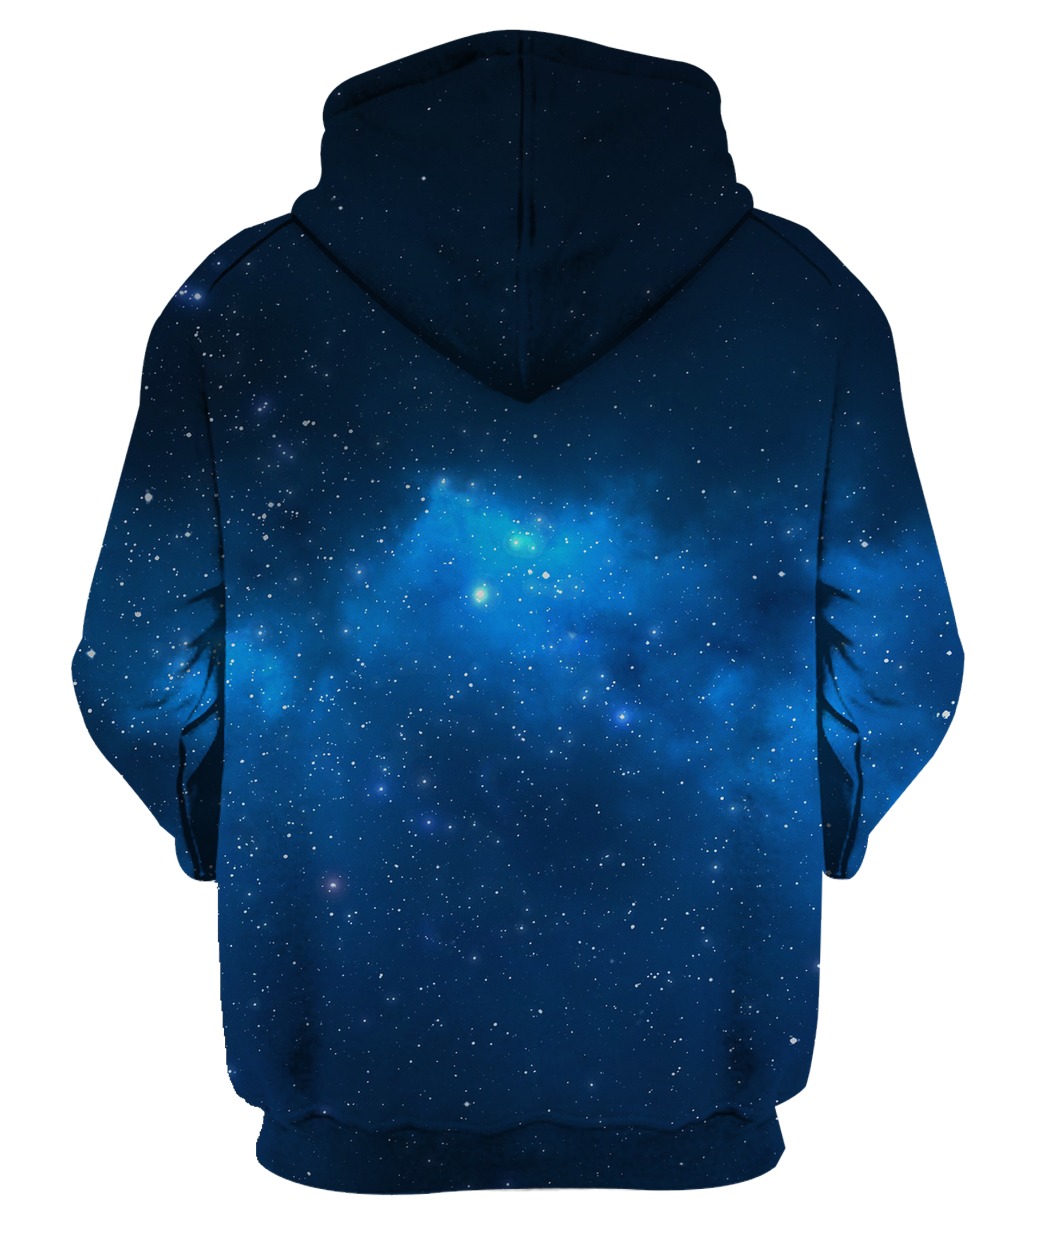 Flower galaxy full printing hoodie - back